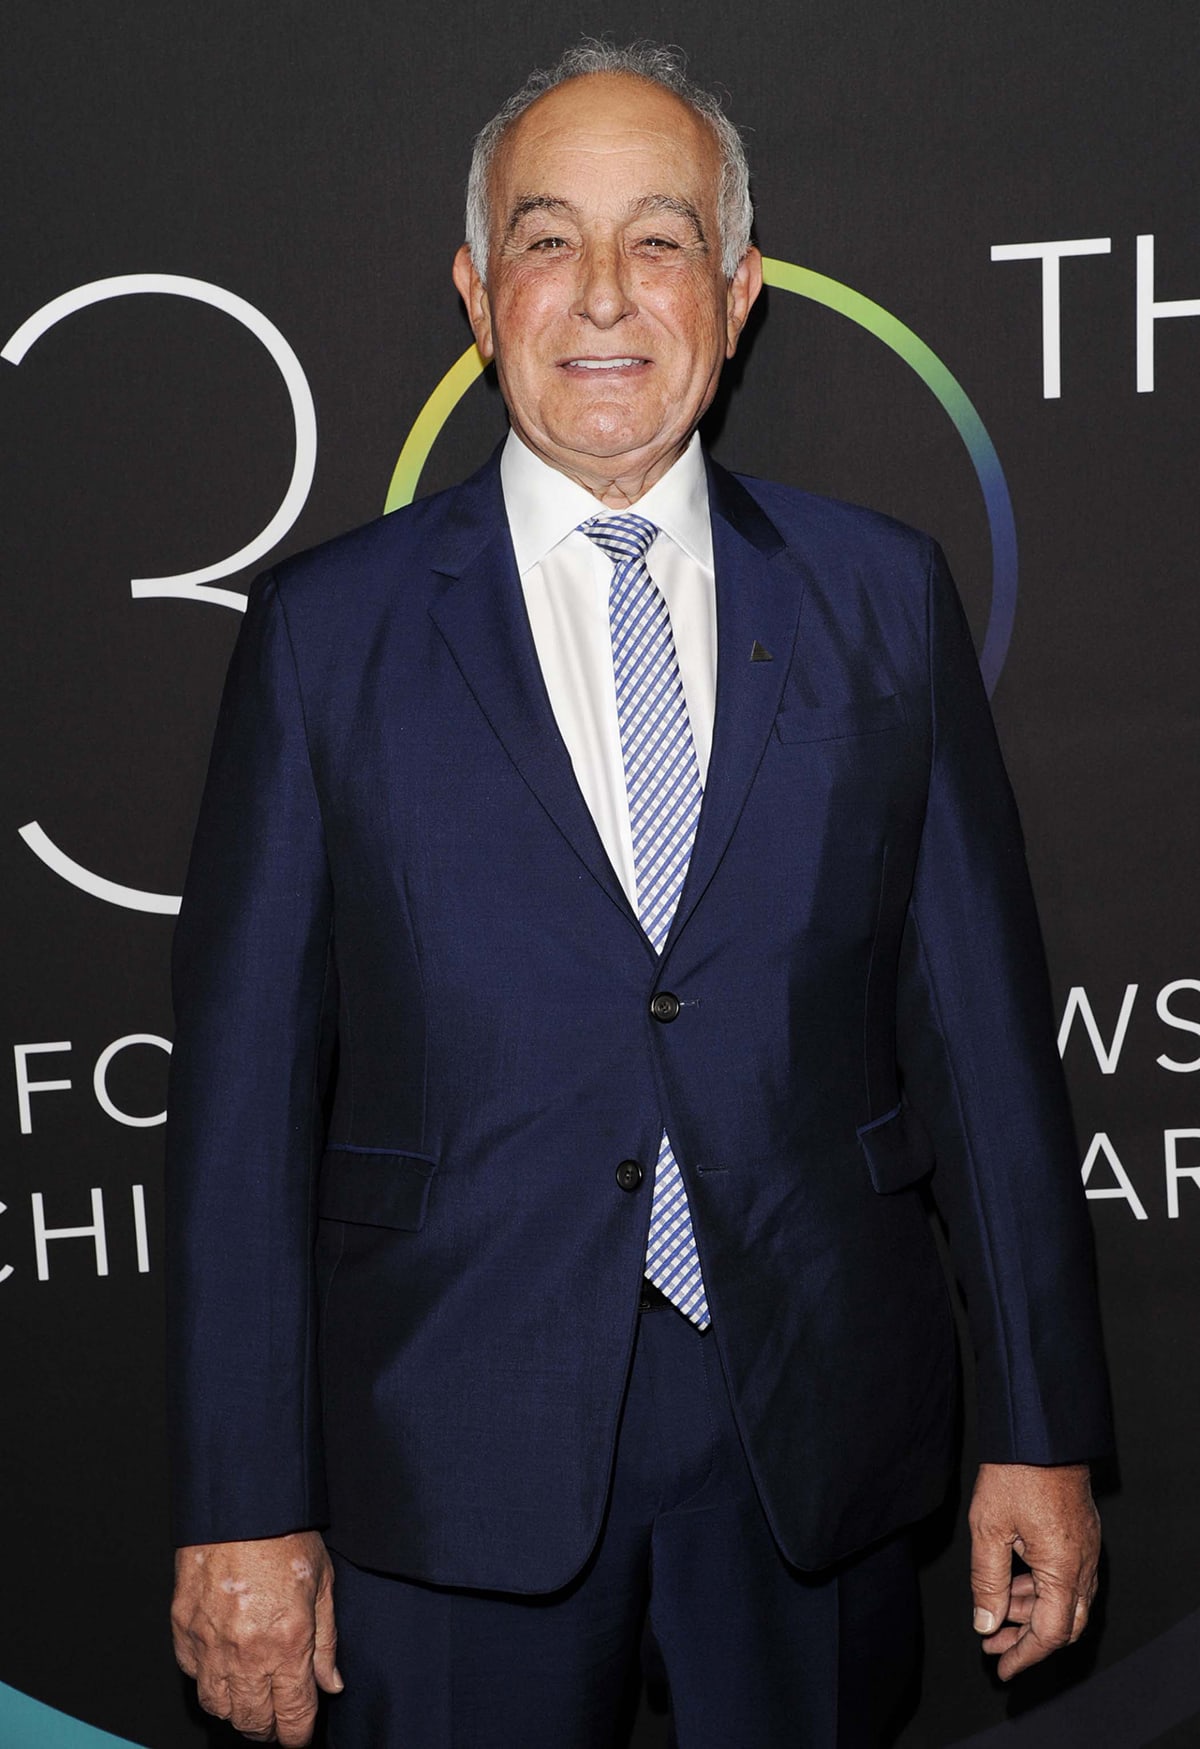 Aldo founder Aldo Bensadoun at the 30th FN Achievement Awards in 2016